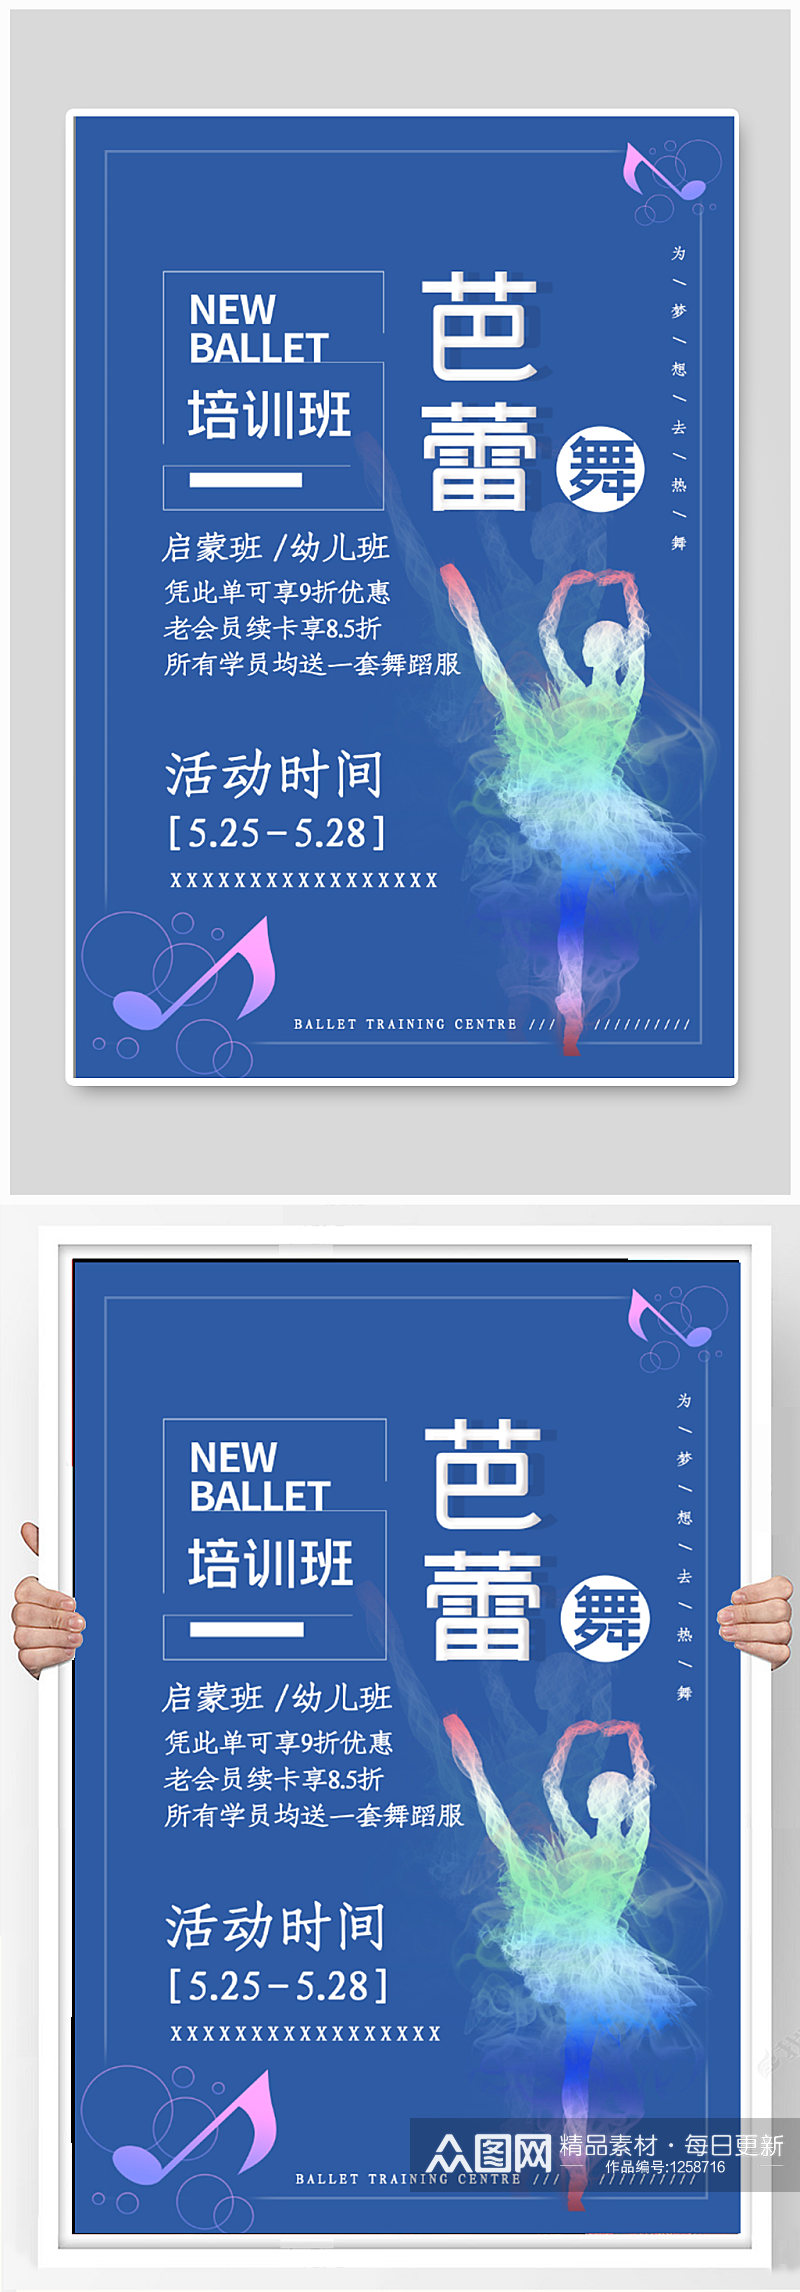 芭蕾舞蹈班招生海报素材